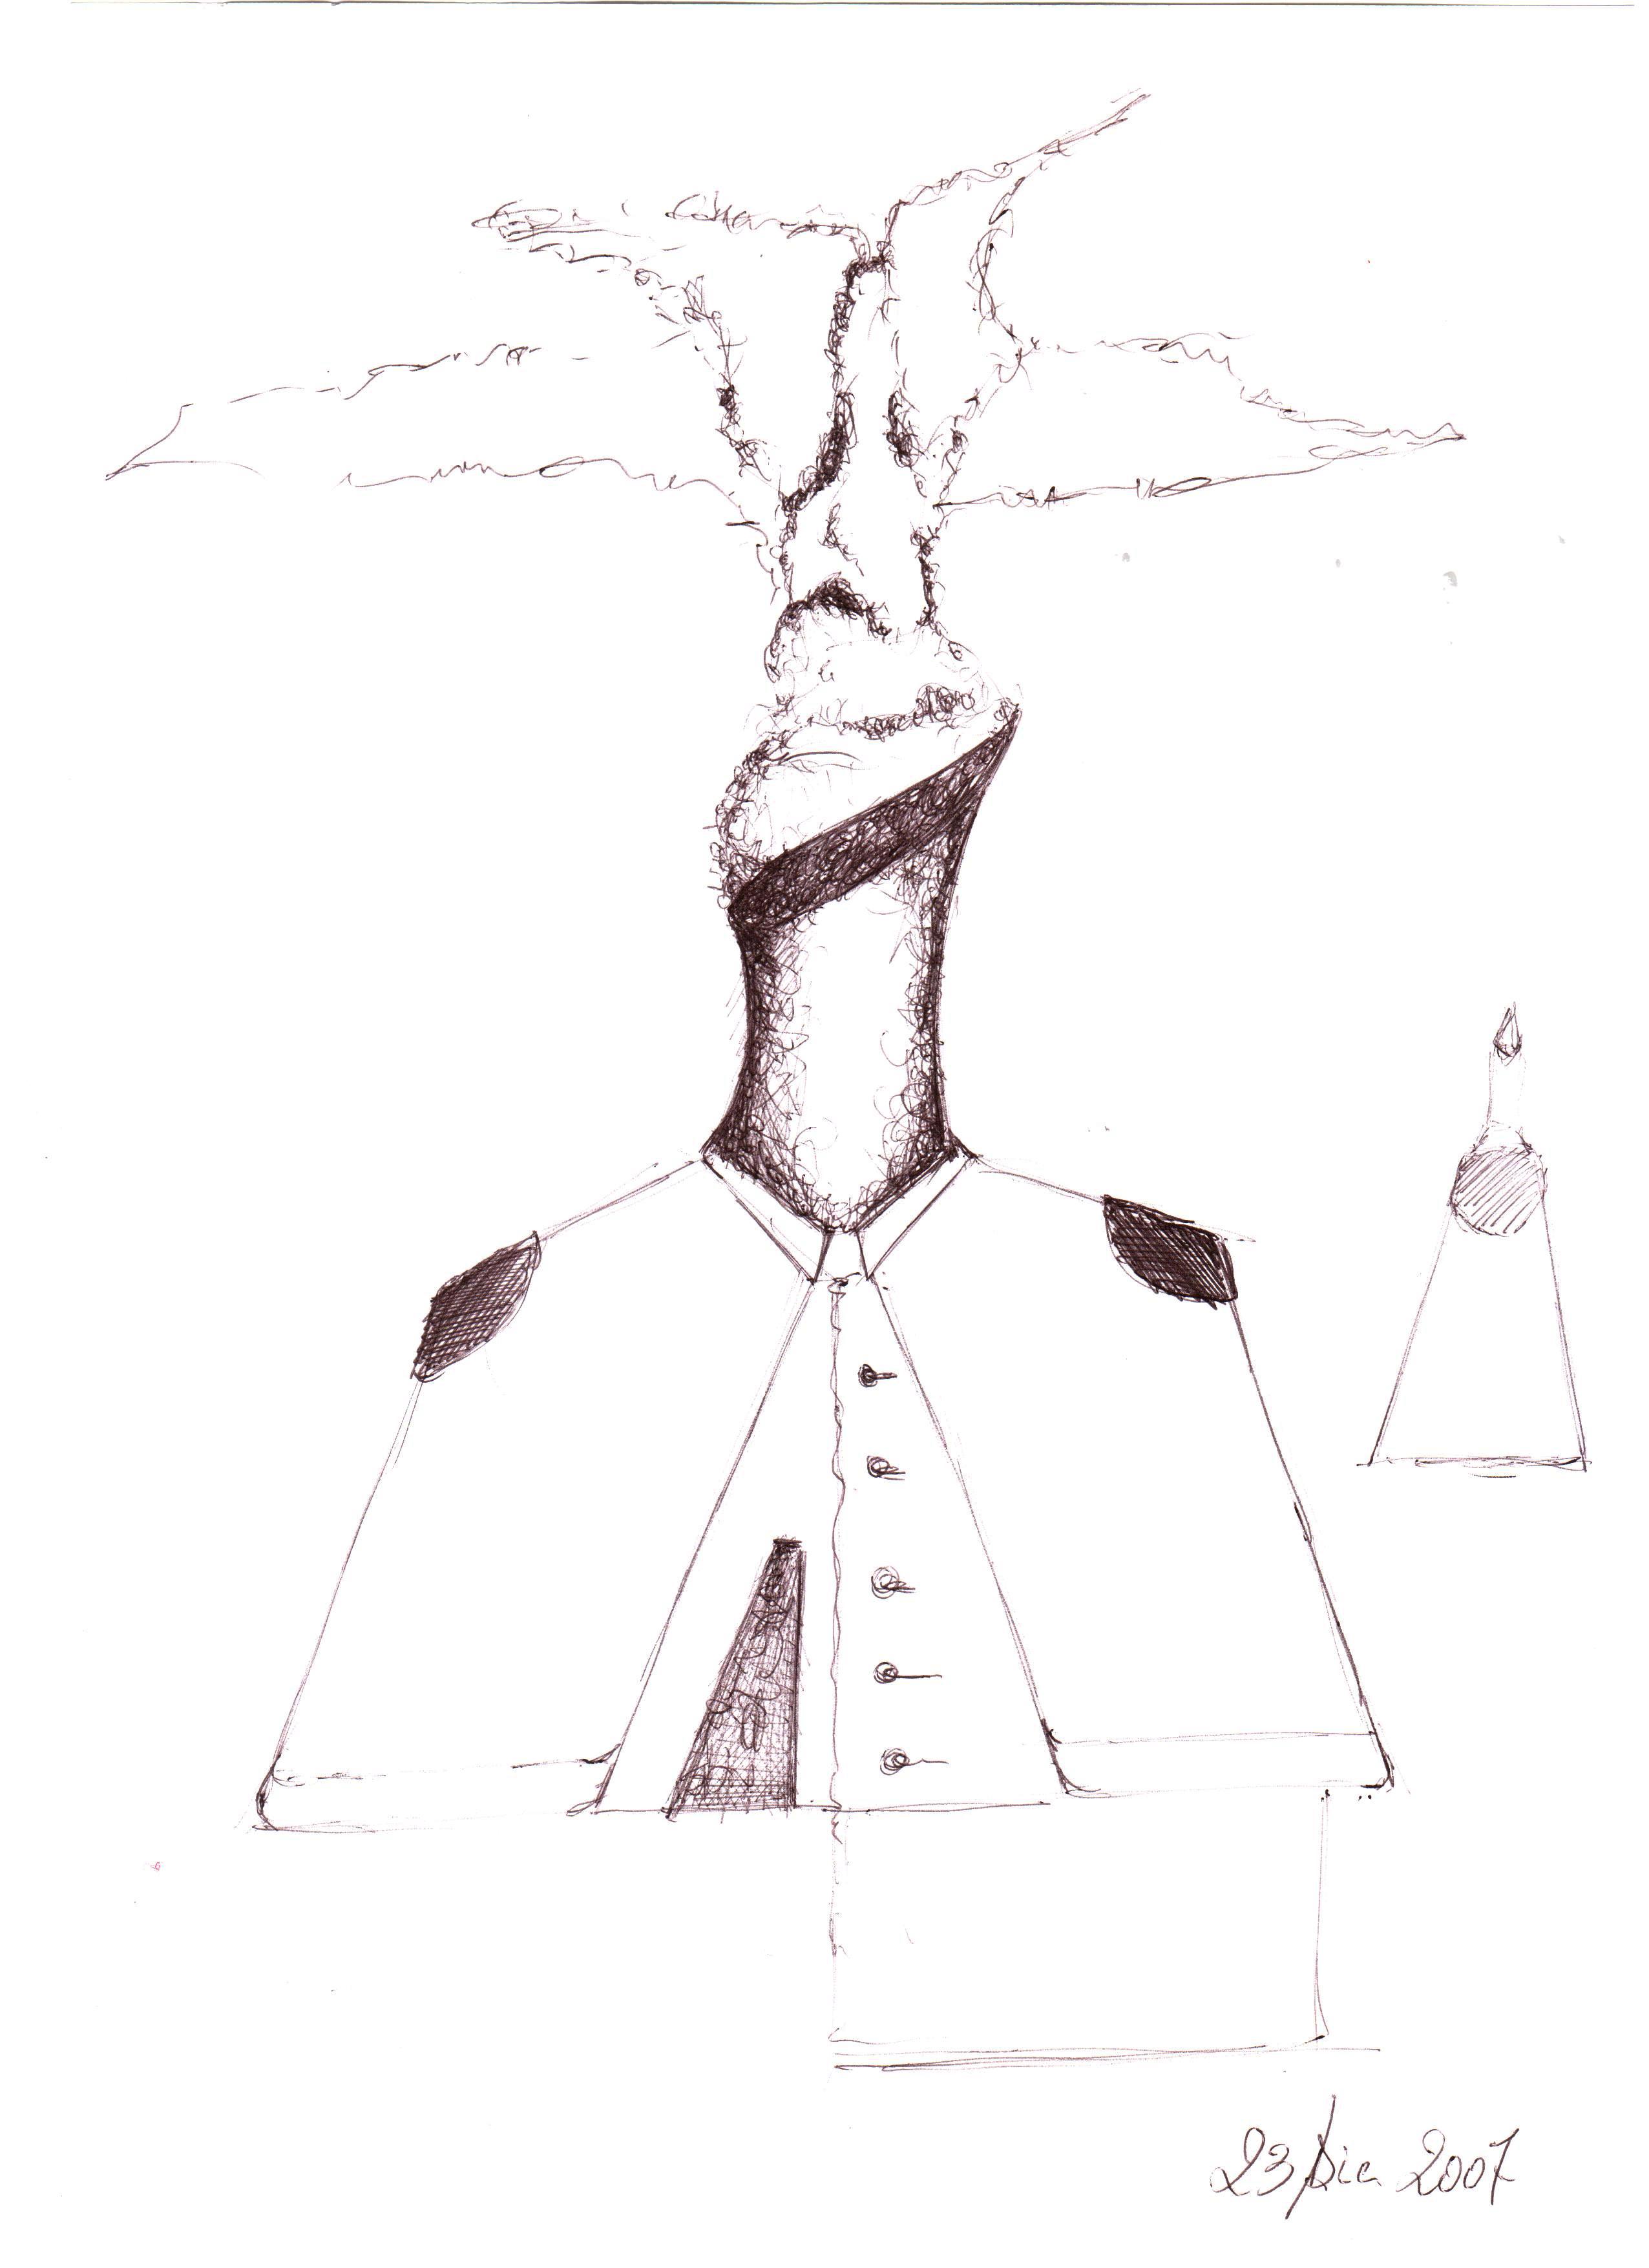 Mezzobusto di una ciminiera: schizzo (Bust of a chimney: sketch), 2007 disegno a penna su carta (pen drawing on paper), cm 21x29,5, Pasquale Mastrogiacomo, Acerno (SA).